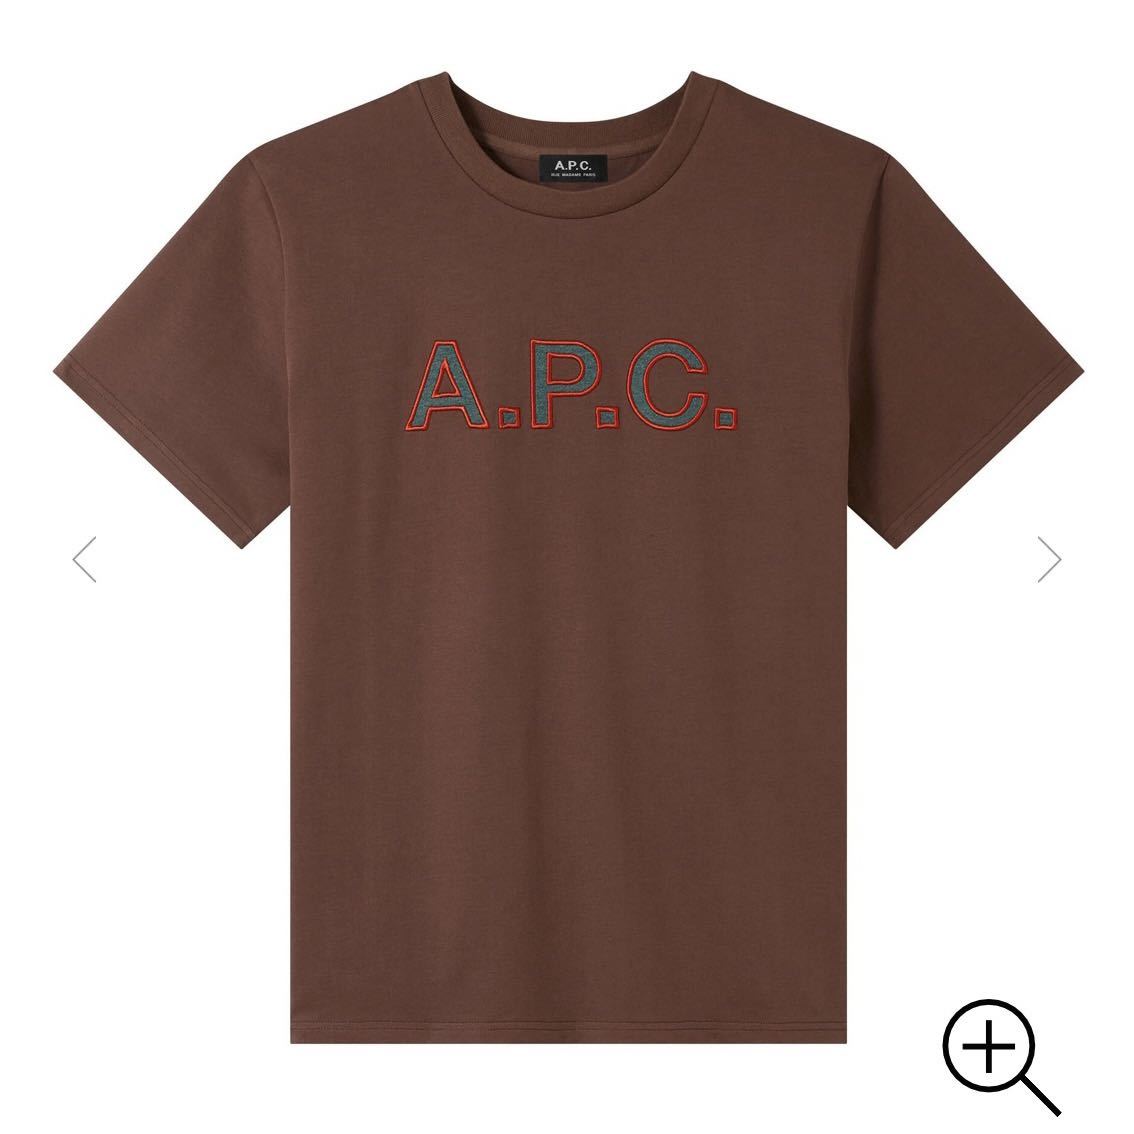 新品 日本正規品 タグあり A.P.C. アーペーセー Romain T-SHIRT ロゴ 刺繍 Tシャツ ブラウン M men´s Tee APC メンズ オーバーサイズ